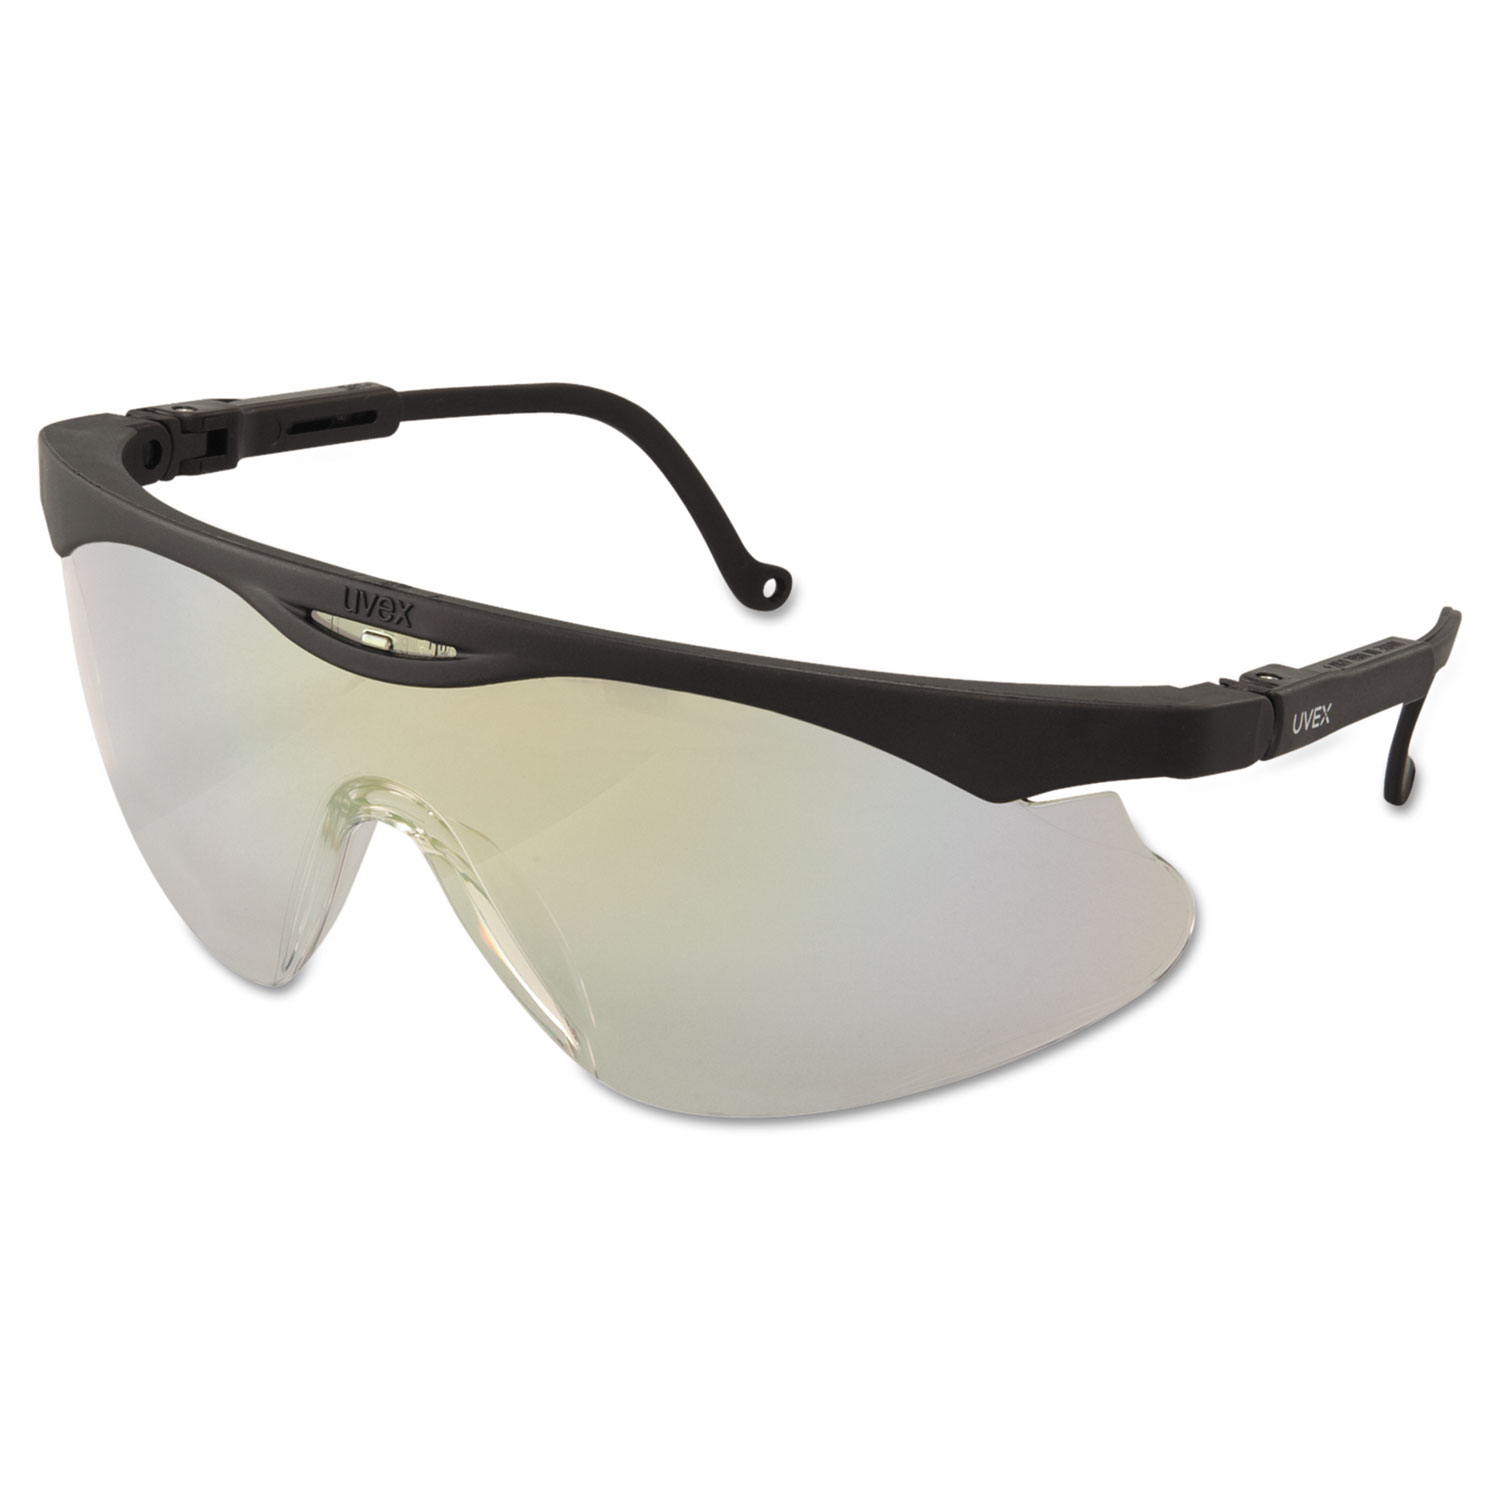 Skyper X2 Safety Spectacles, Black Frame